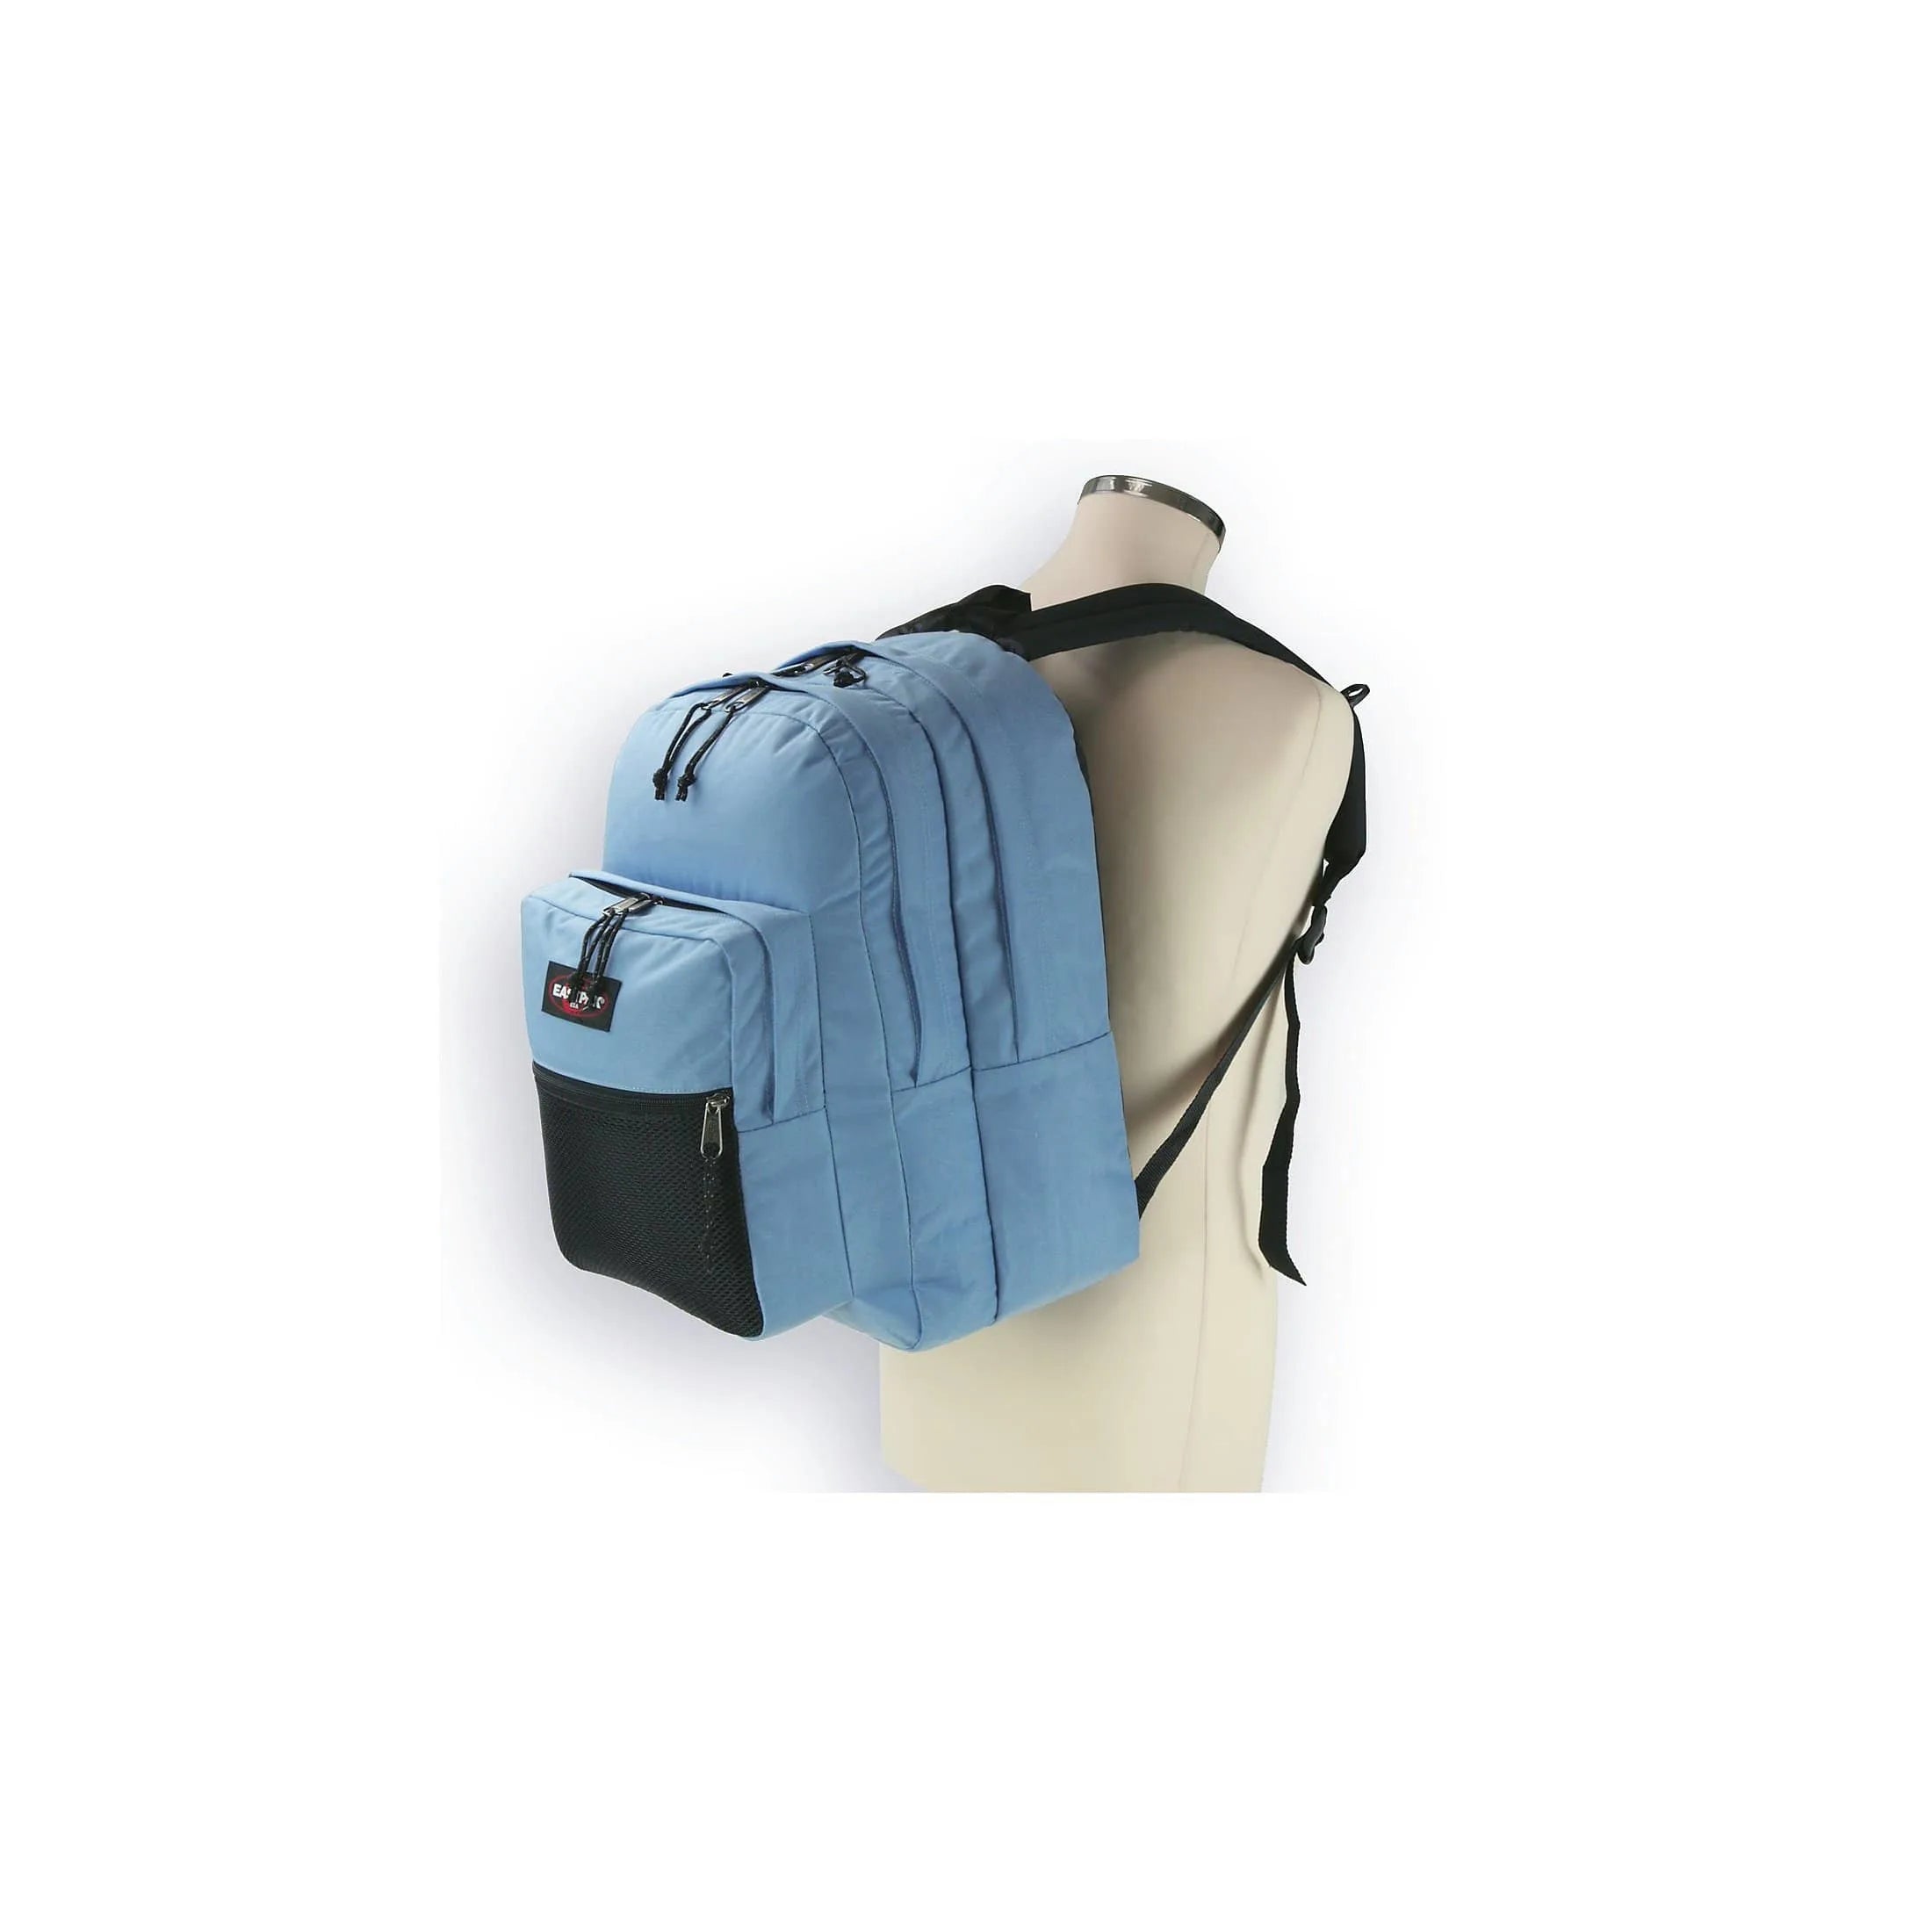 Eastpak Authentic Pinnacle leisure backpack 42 cm - Refleks Navy